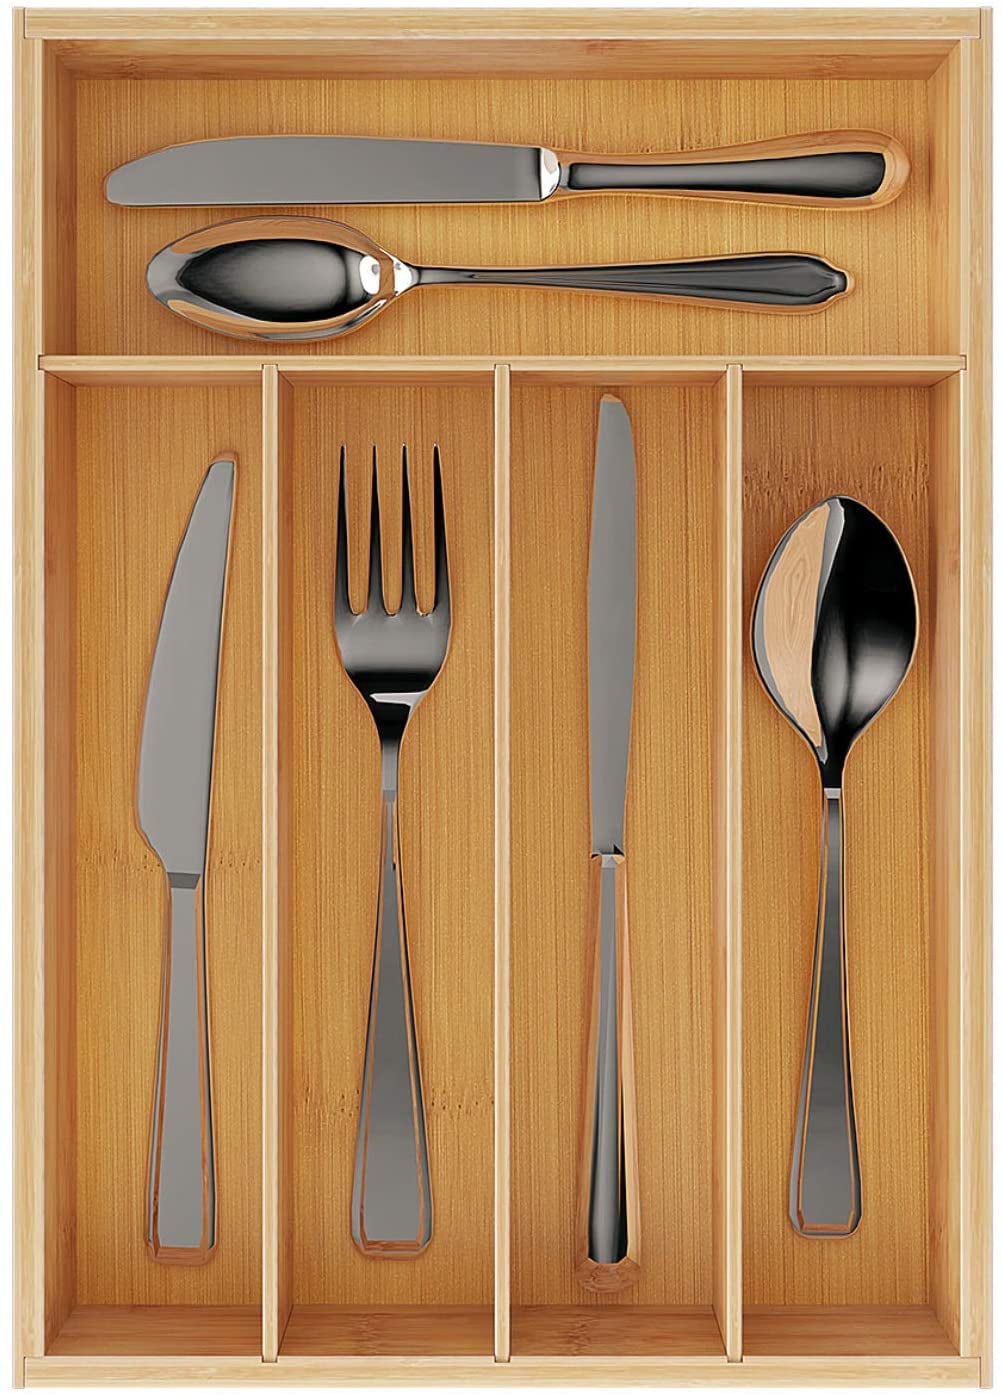 Silverware Utensil Drawer Tray Storage Flatware Holder Kitchen Cutlery Organizer 